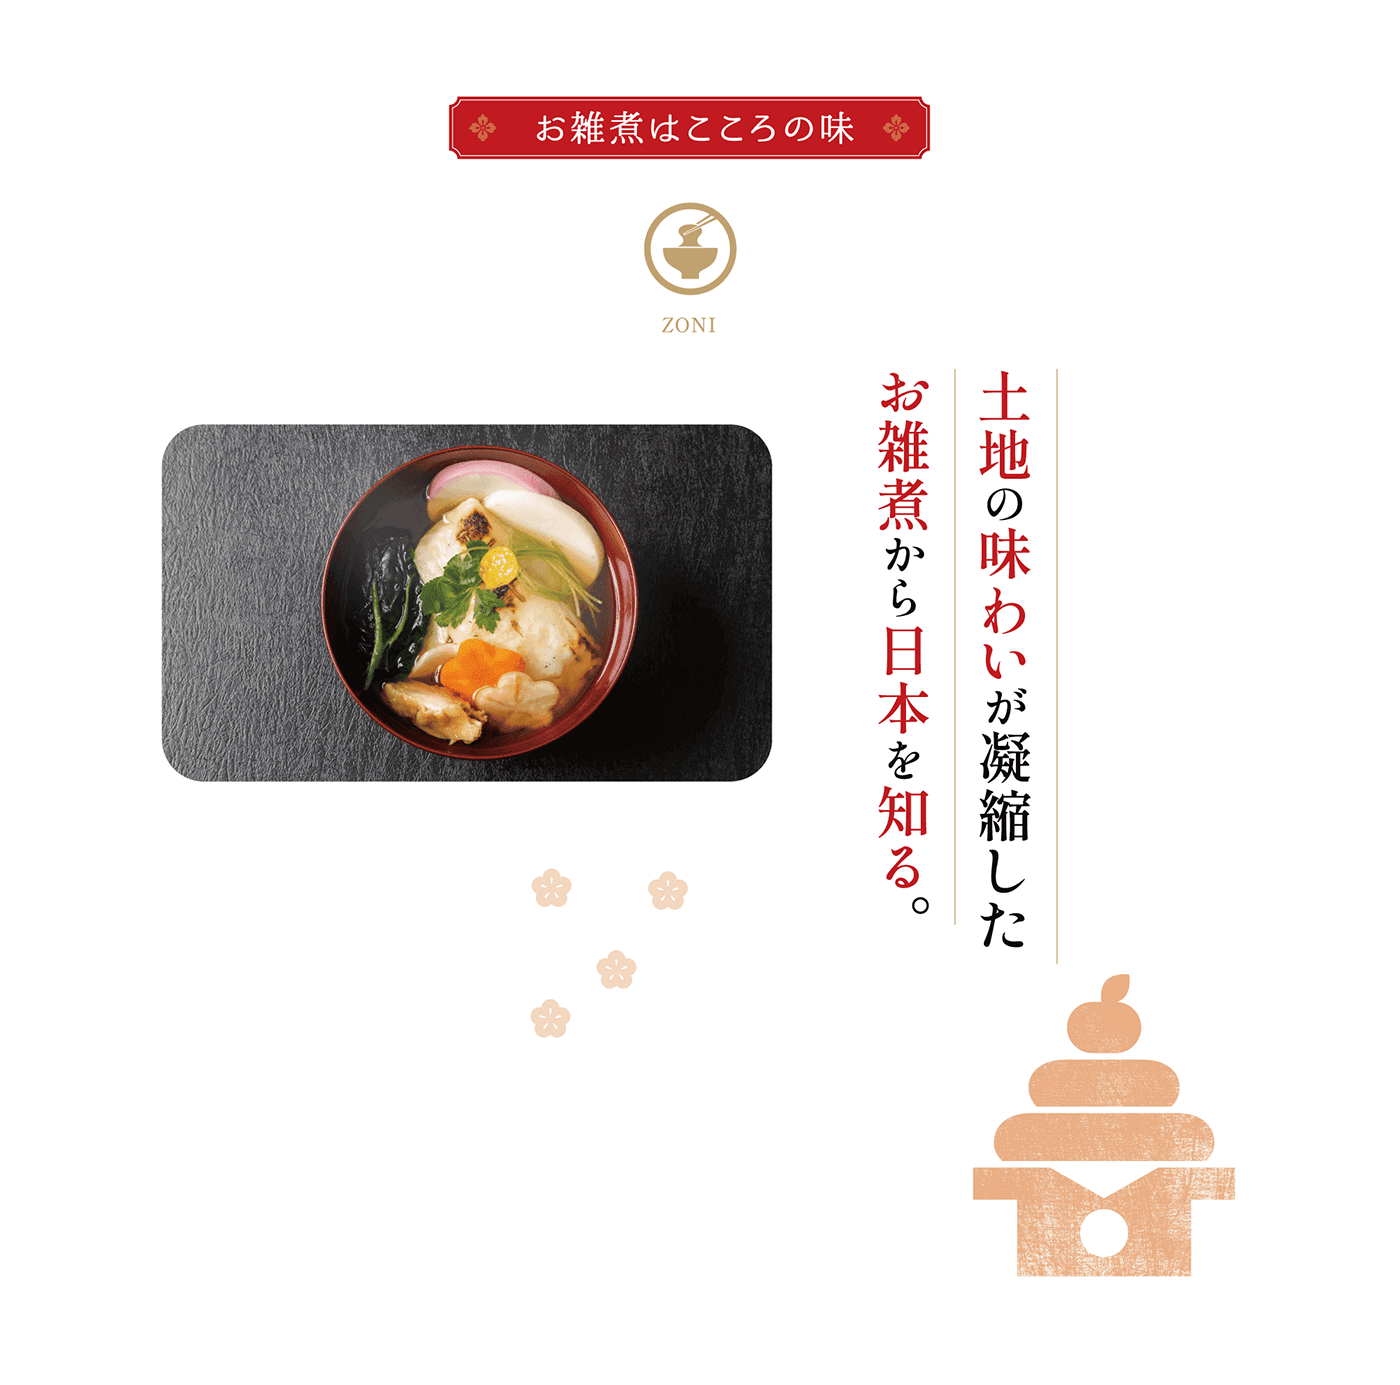 土地の味わいが凝縮したお雑煮から日本を知る。